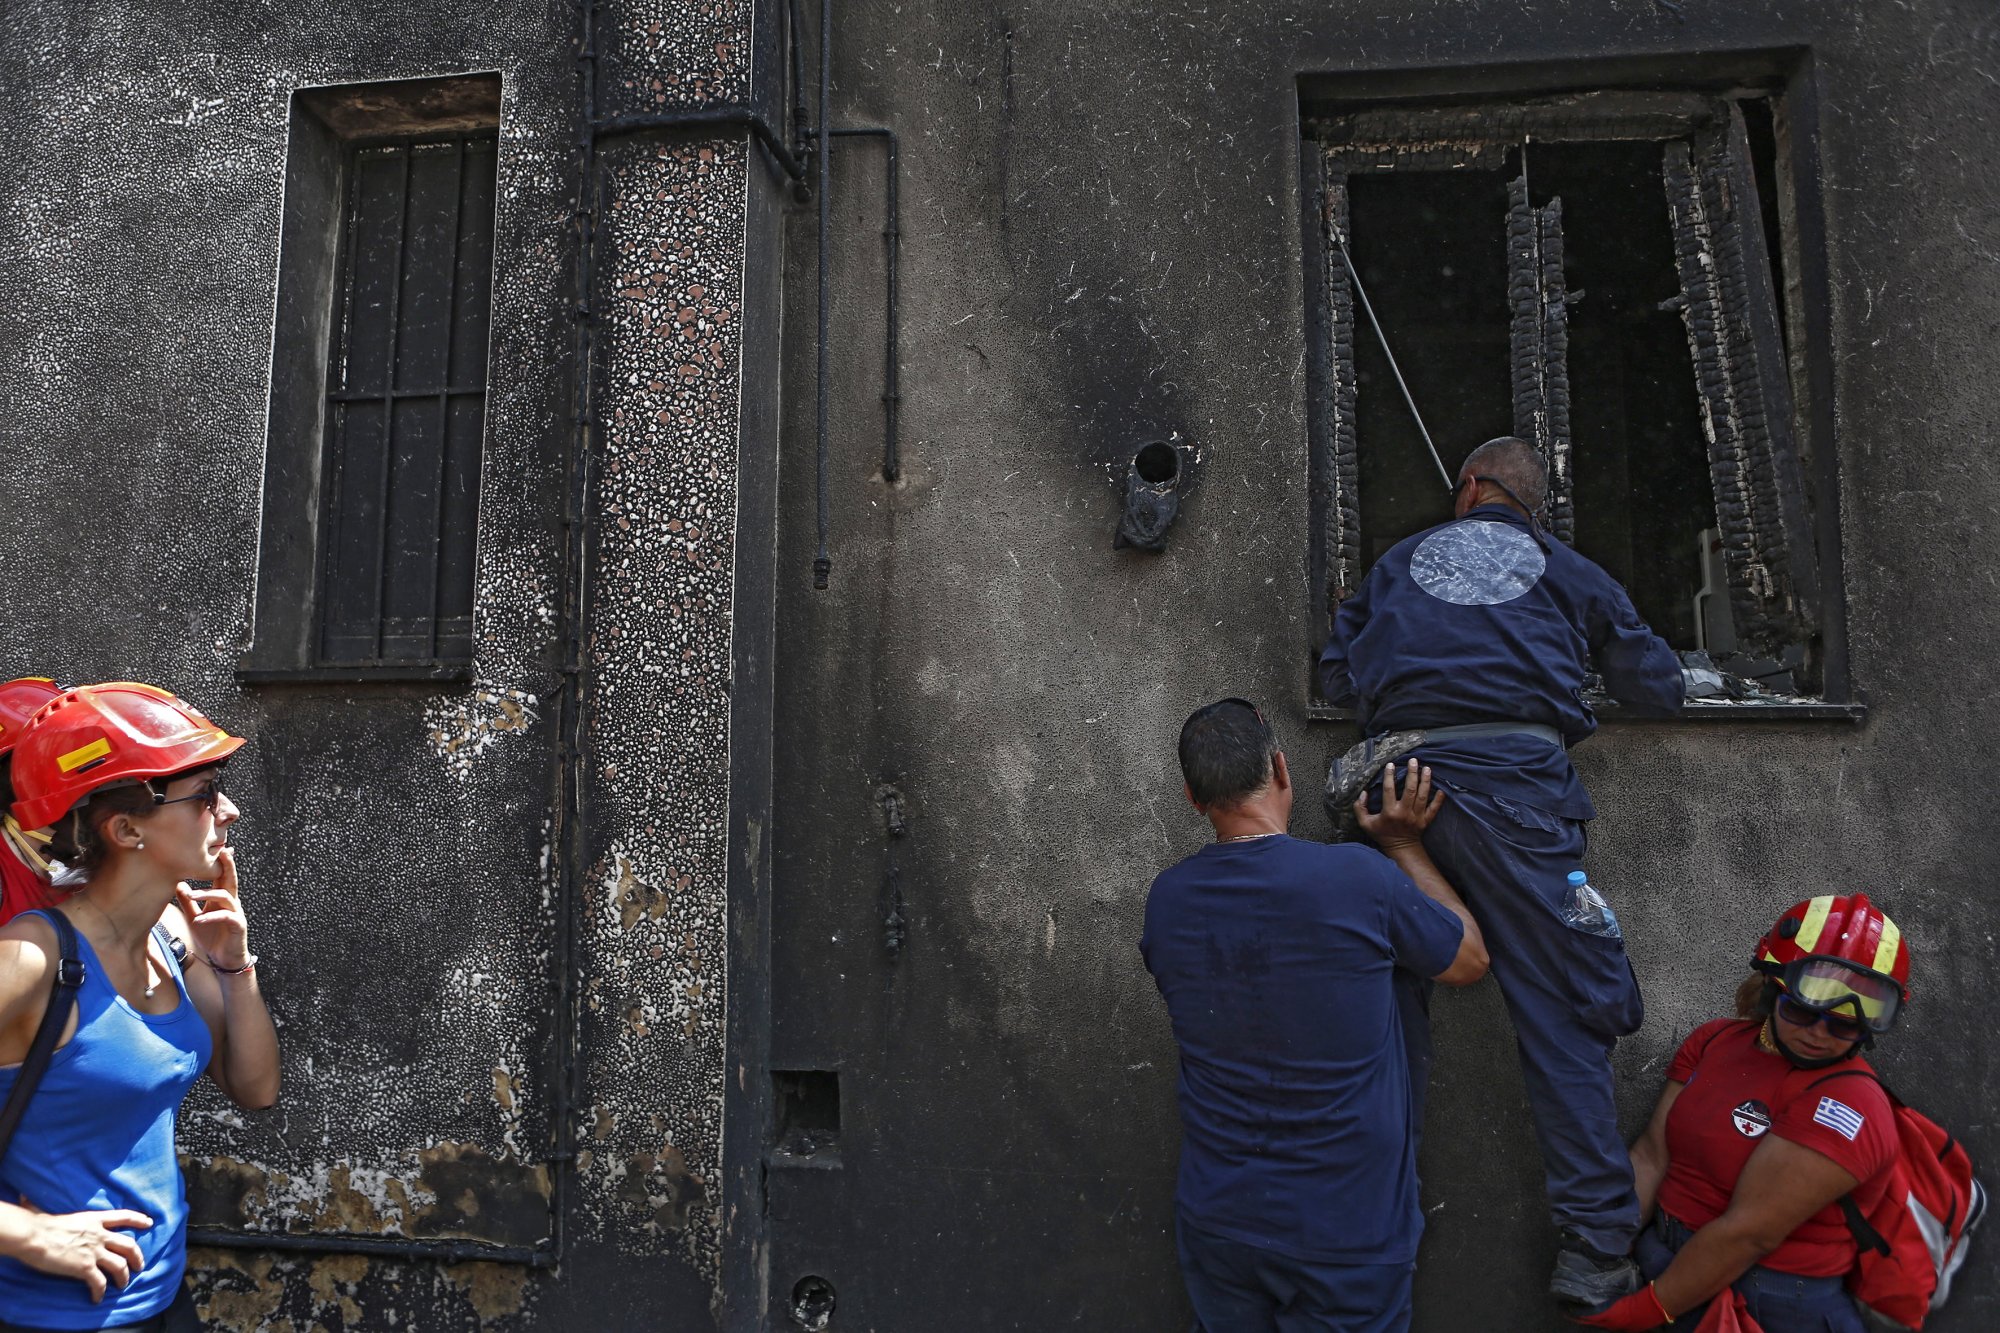 Χαλκιδική: «Με χτύπησε ο πατέρας της φίλης μου, αφού τους έκαψα το σπίτι» - Μετανιωμένη τώρα η 19χρονη